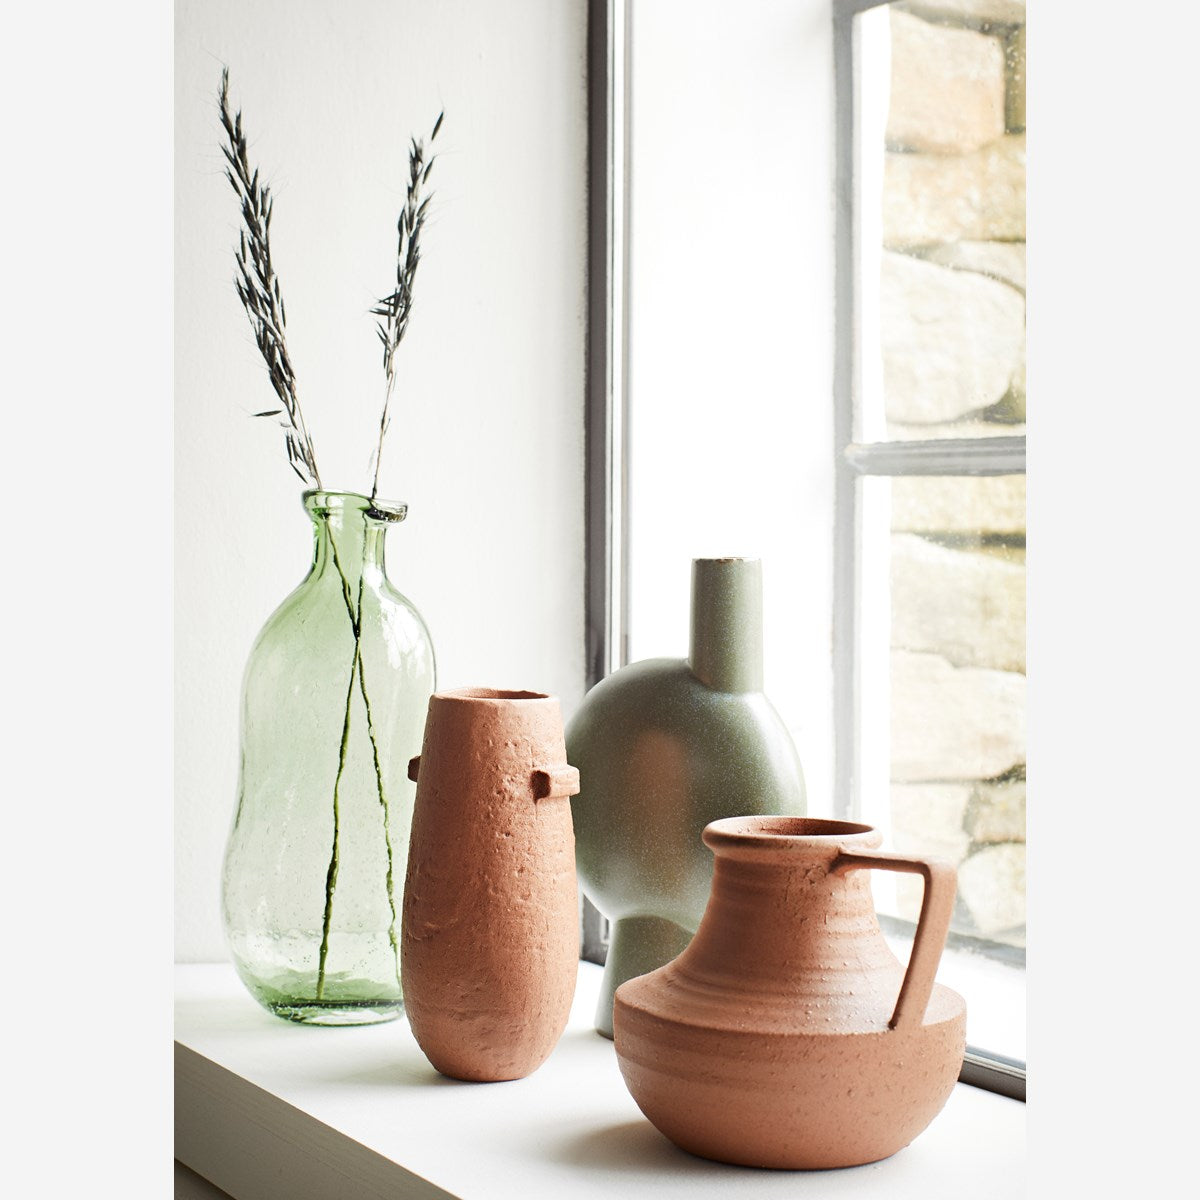 Stoneware Vase Green -
Madam Stoltz